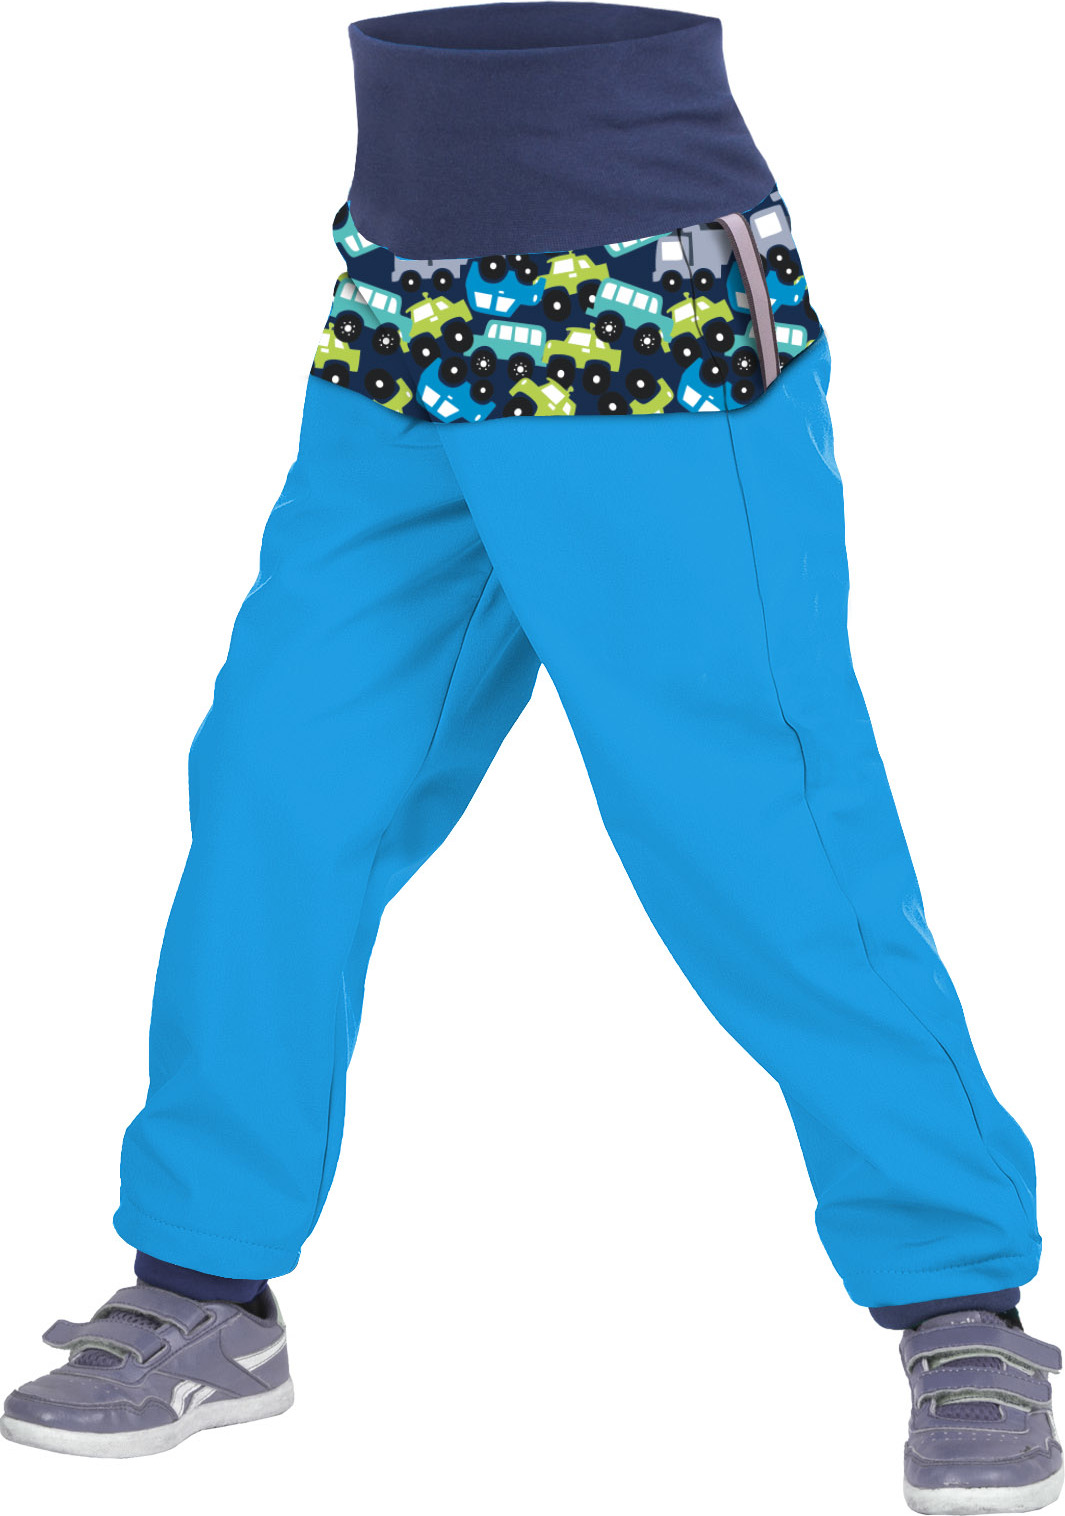 Batolecí softshellové kalhoty UNUO s fleecem Autíčka tyrkysové (Softshell toodler trousers) Velikost: 80/86